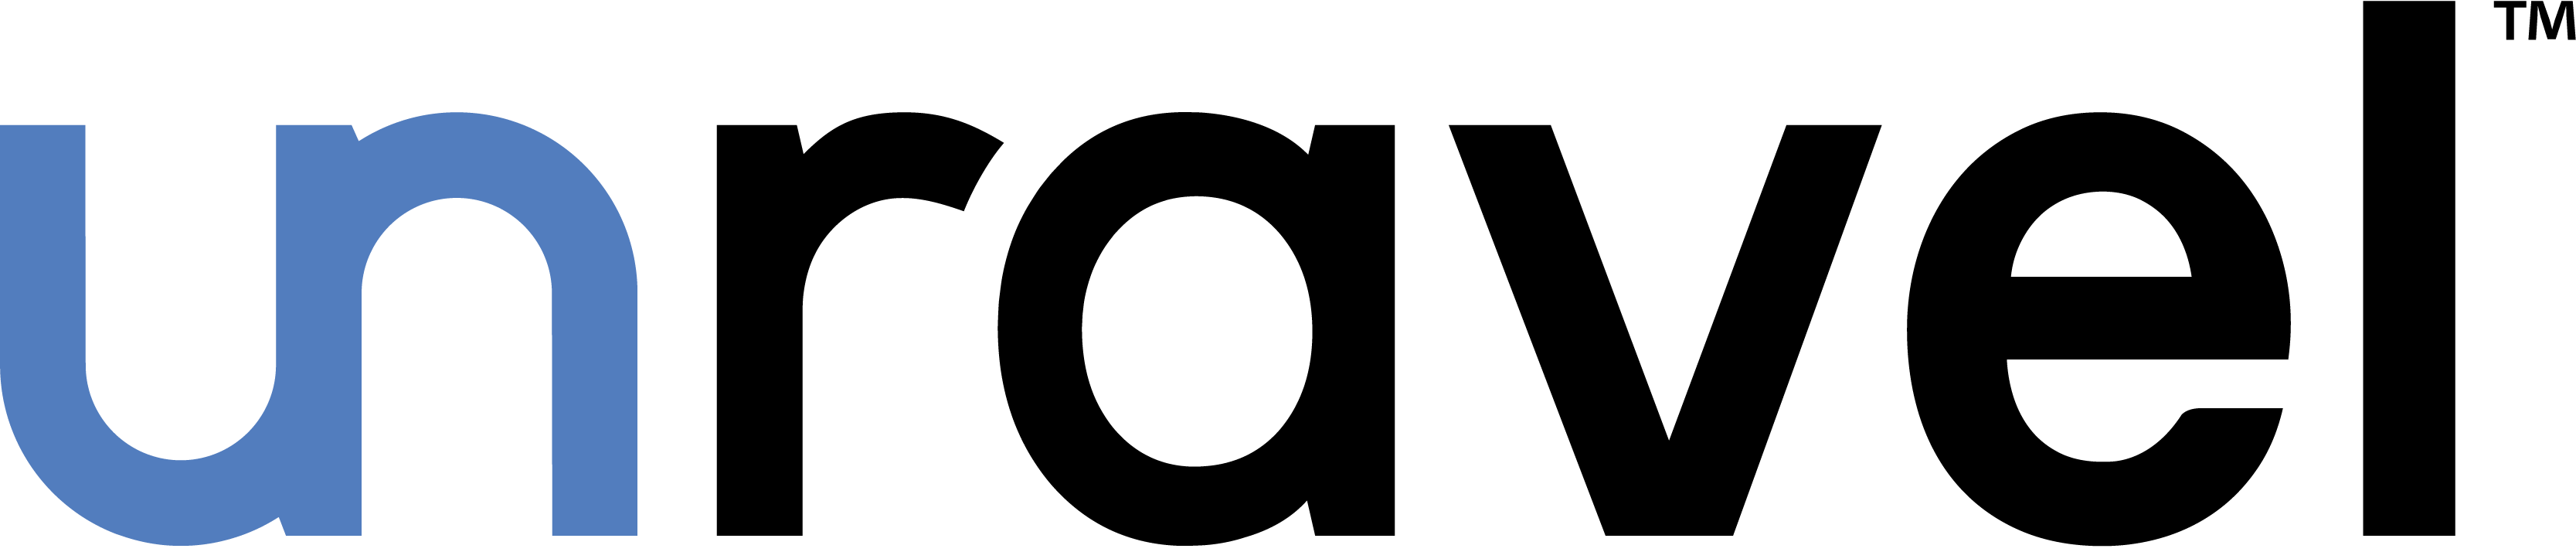 Uravel Data Logo